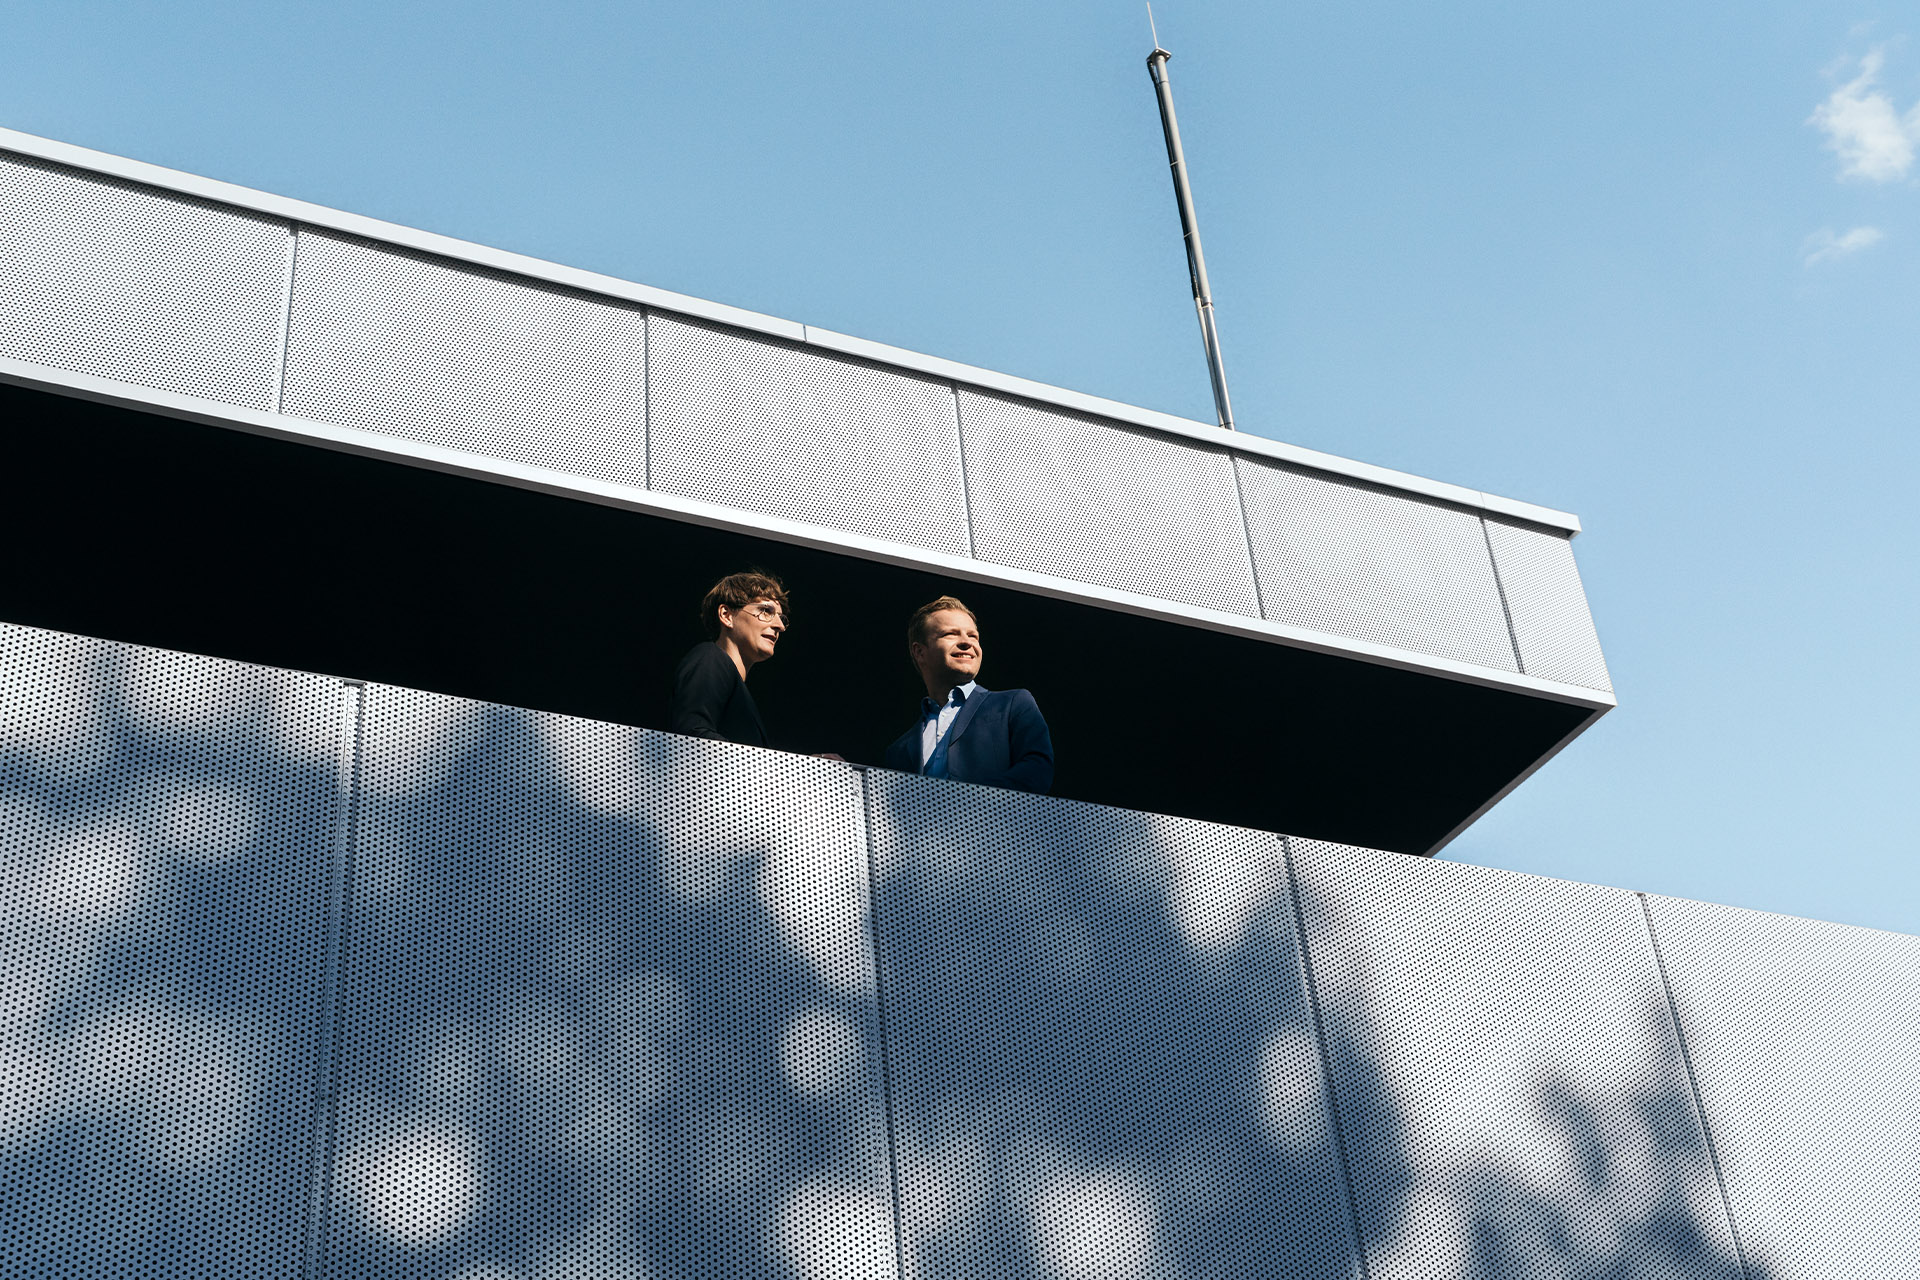 Expertos en sustentabilidad, la Dra. Johanna Klewitz y Malte Vömel, en el balcón de la sala de estar del hub de carga de Audi.